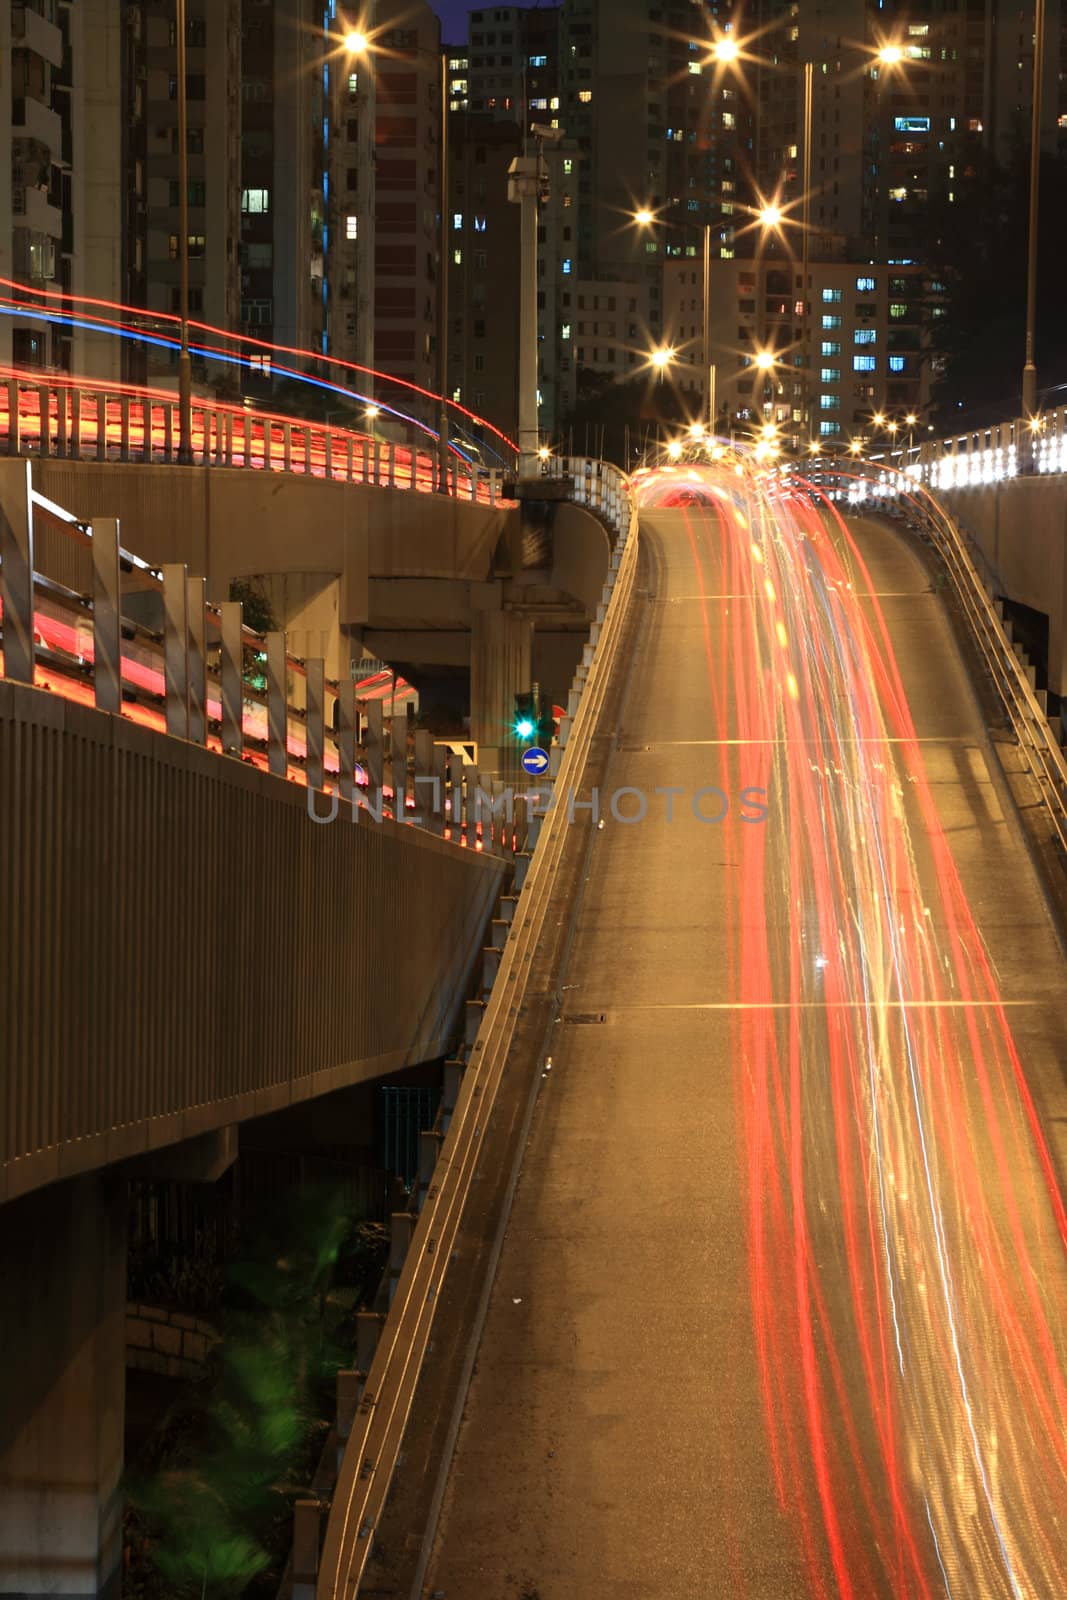 Hong Kong freeway system at night by leungchopan